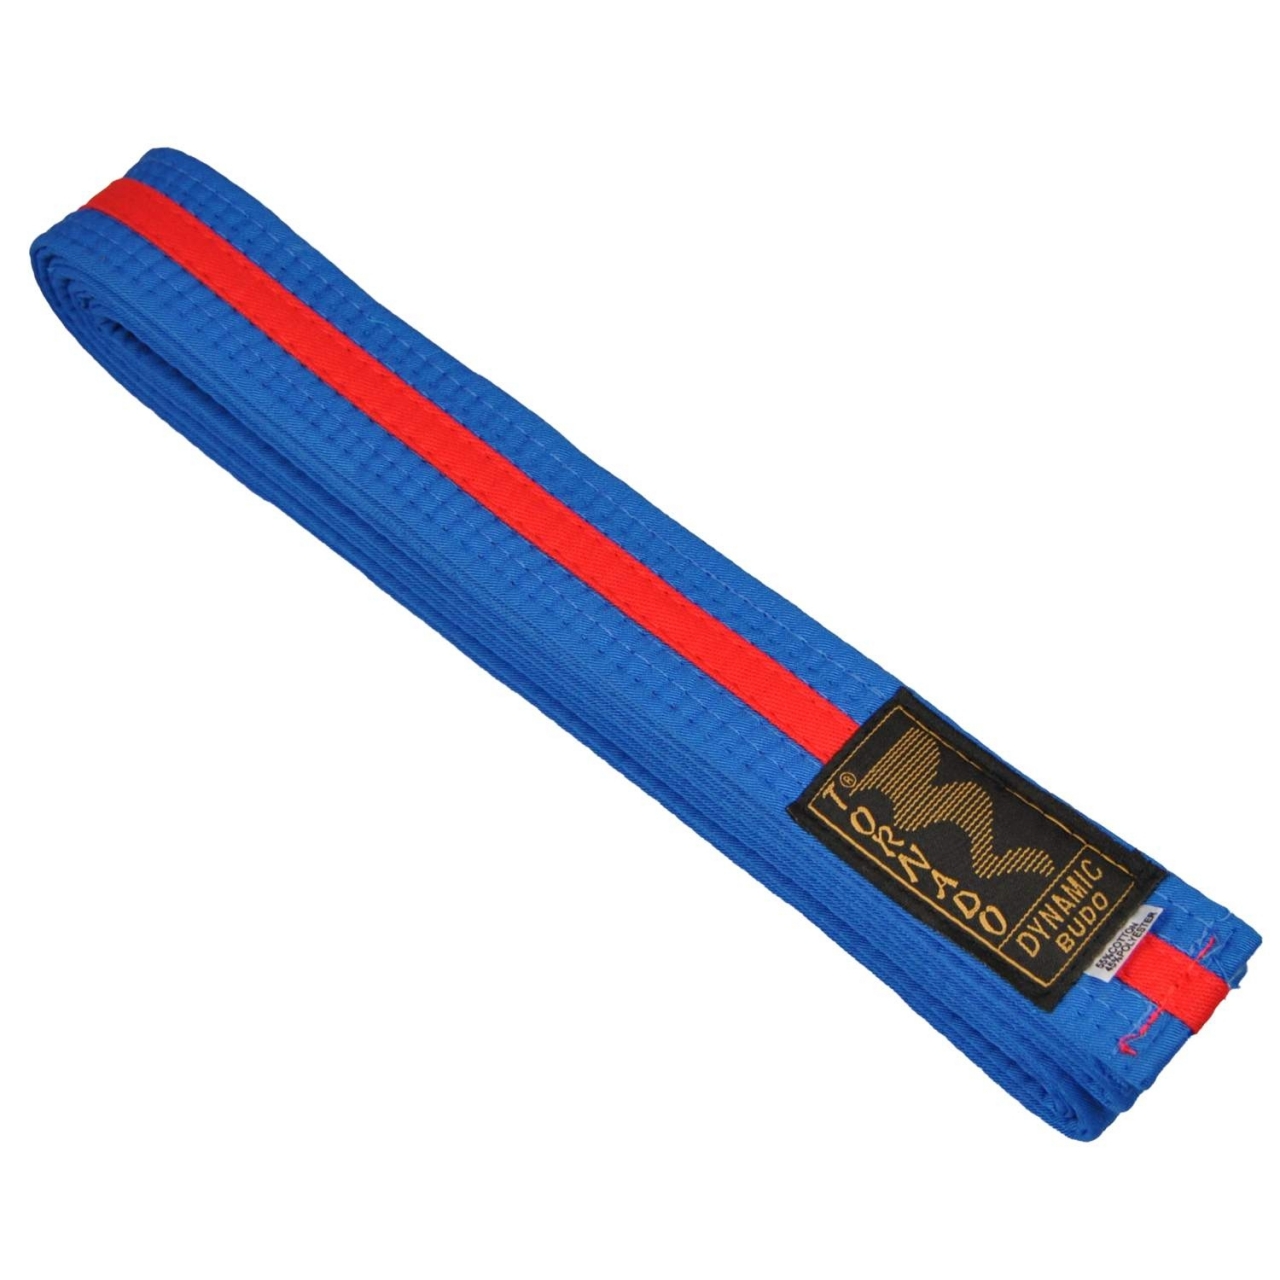 Kimono pásek Tornado Dynamic Budo 4cm - modrý-červený